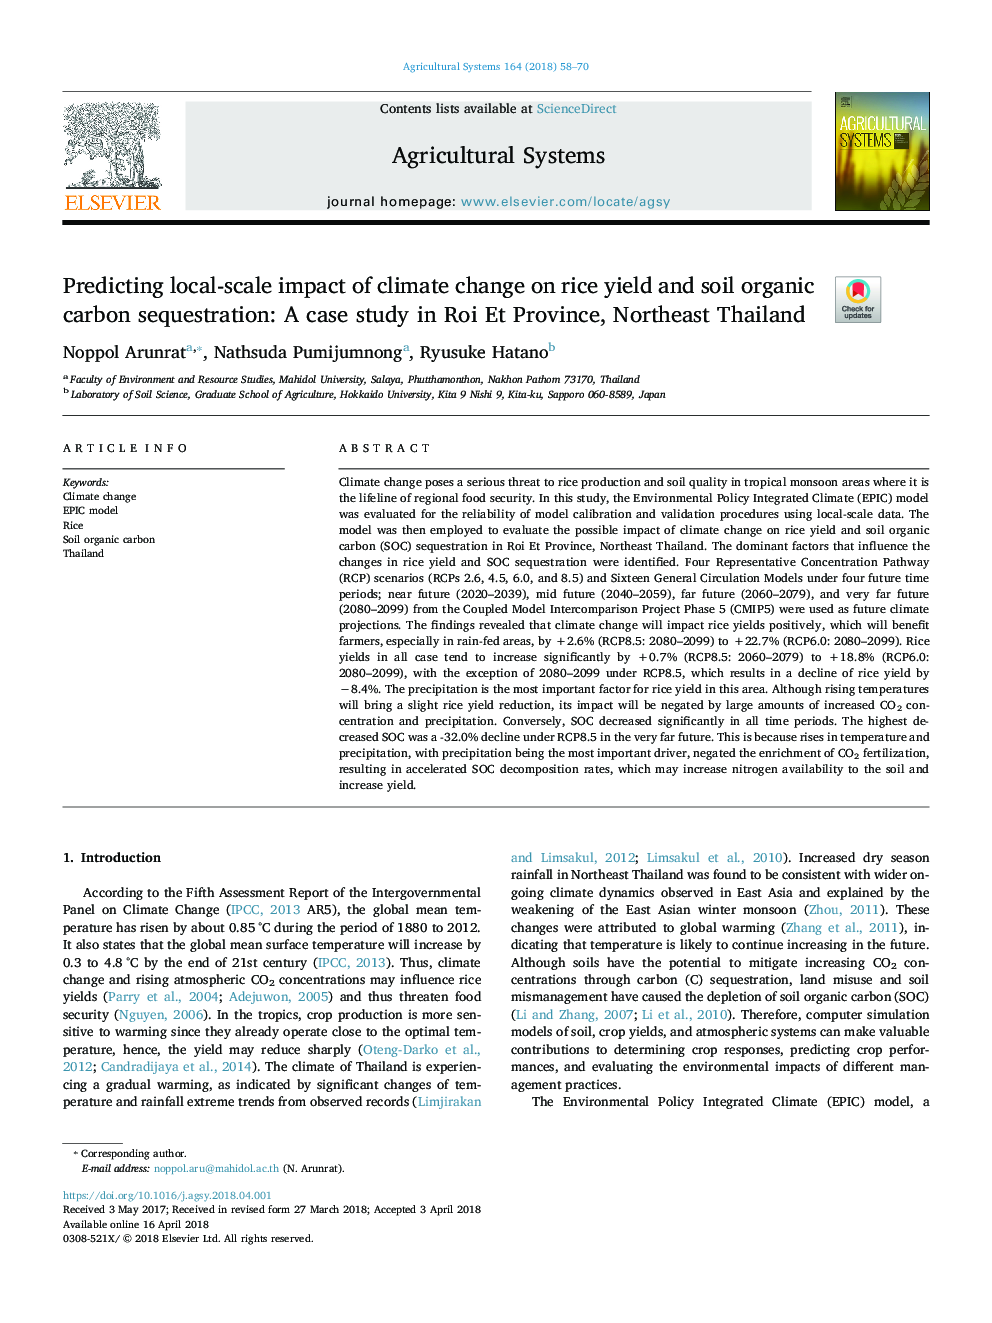 پیش بینی تاثیر منطقه ای بر تغییرات آب و هوایی بر عملکرد برنج و تسهیل جذب کربن آلی خاک: مطالعه موردی در استان رویت، شمال شرقی 